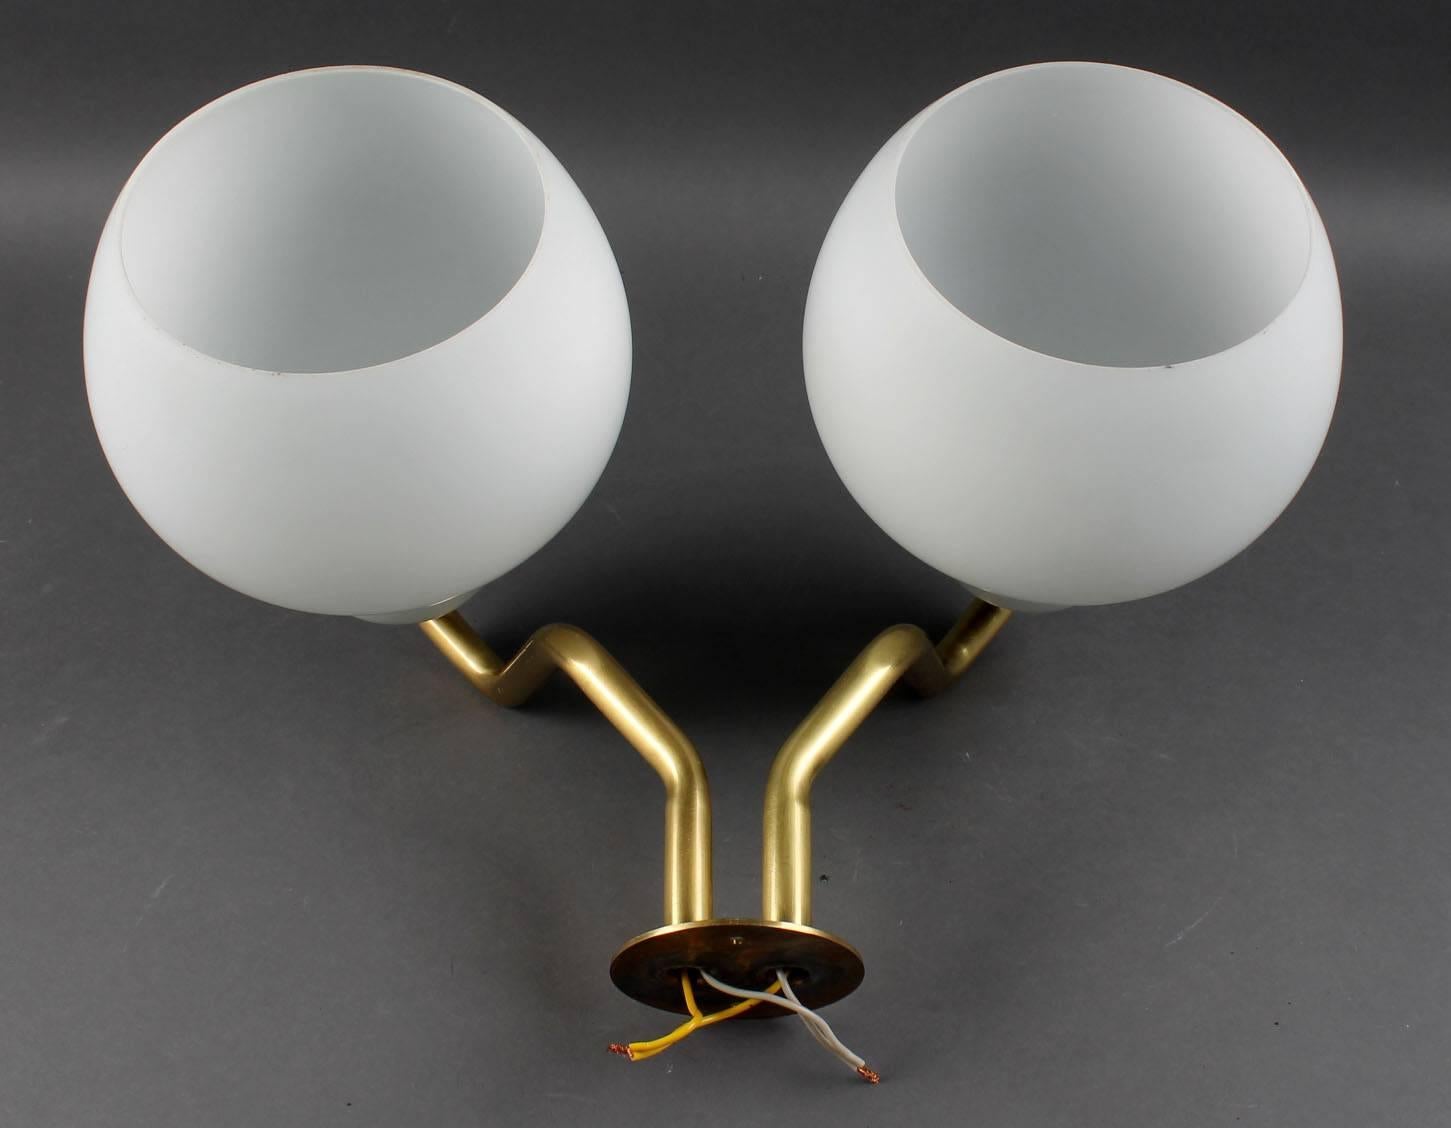 Wandleuchte, 1955 von Vilhelm Lauritzen für Louis Poulsen in den 1950er Jahren entworfen.
Messingkonstruktion mit mundgeblasenen Opalglasschirmen.
Perfekter Originalzustand.